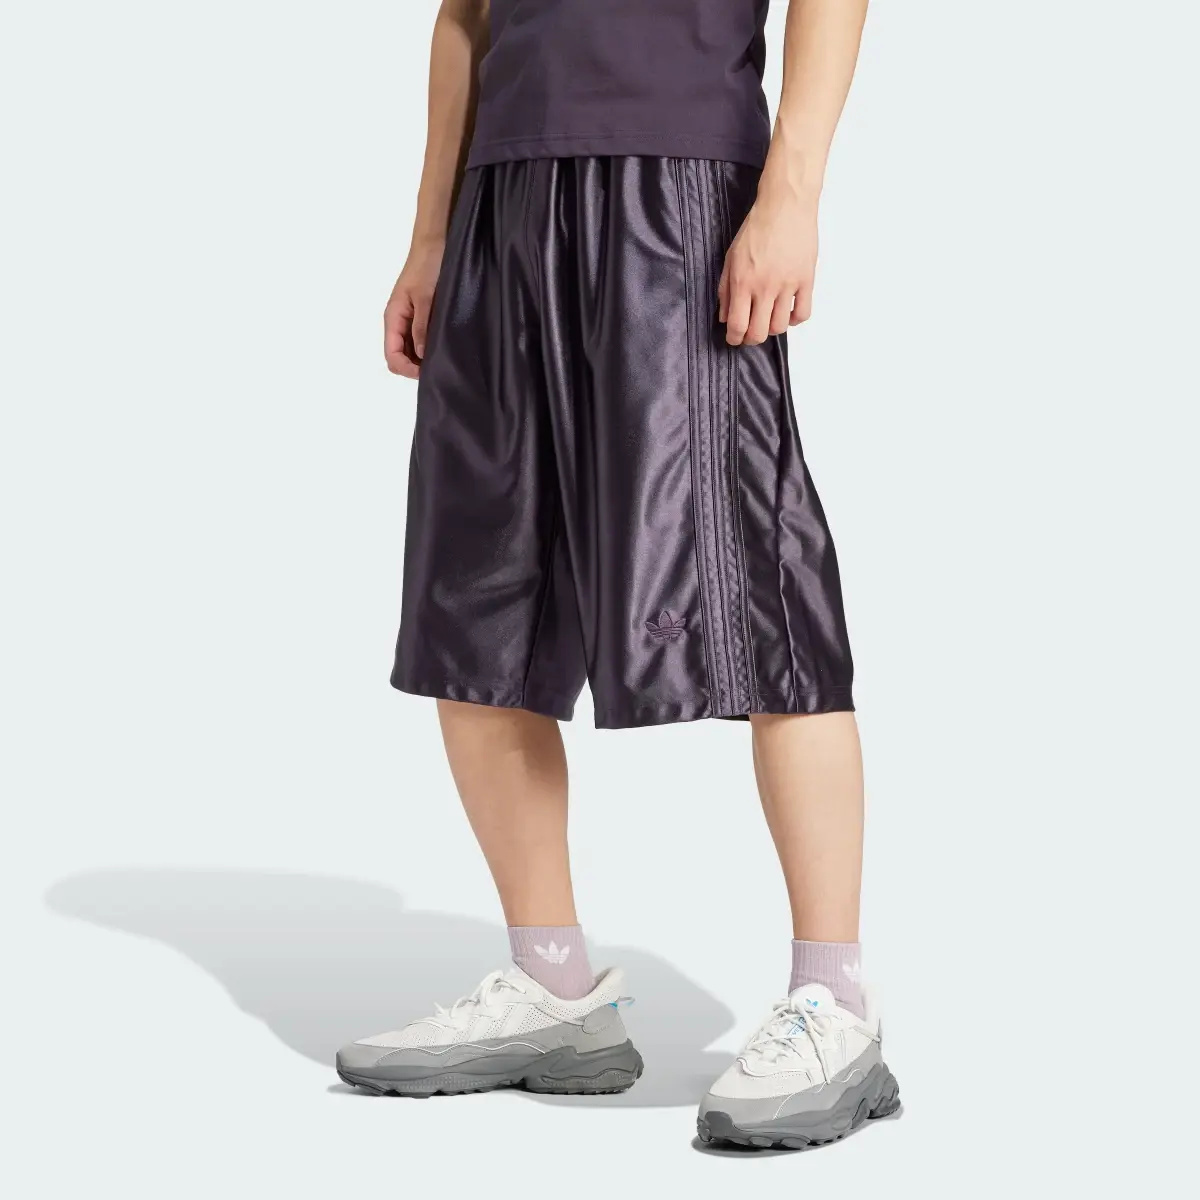 Adidas Shorts Oversized. 3